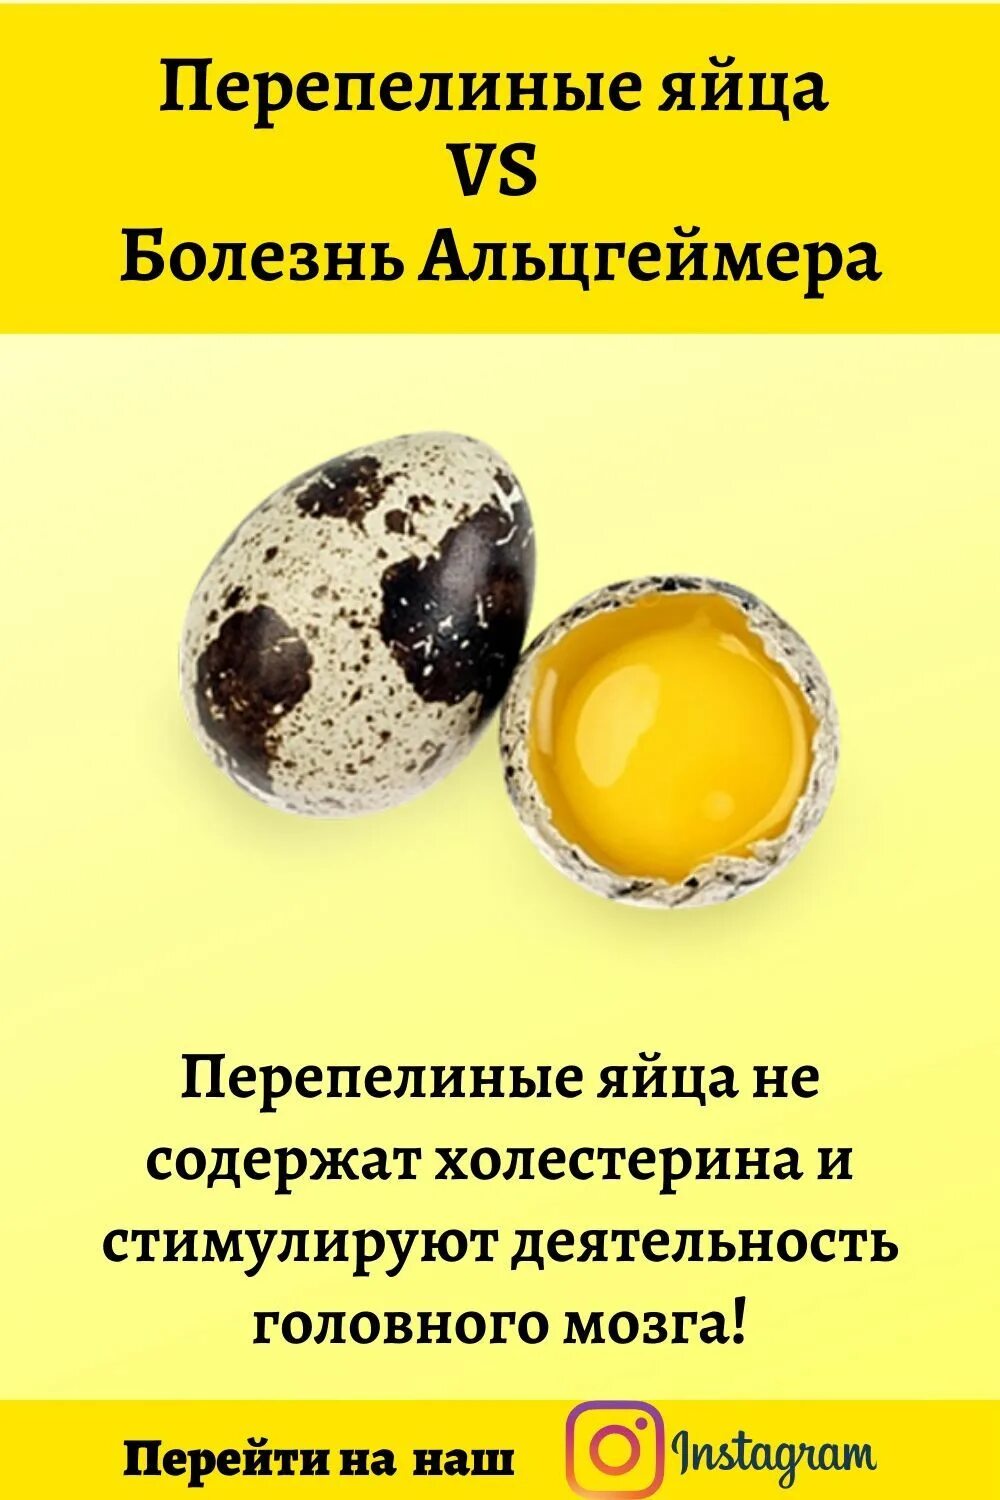 Сколько холестерина в яйце. Яйцо перепелиное. Холестерин в перепелиных яйцах. Размер перепелиного яйца. Витамины в перепелиных яйцах.